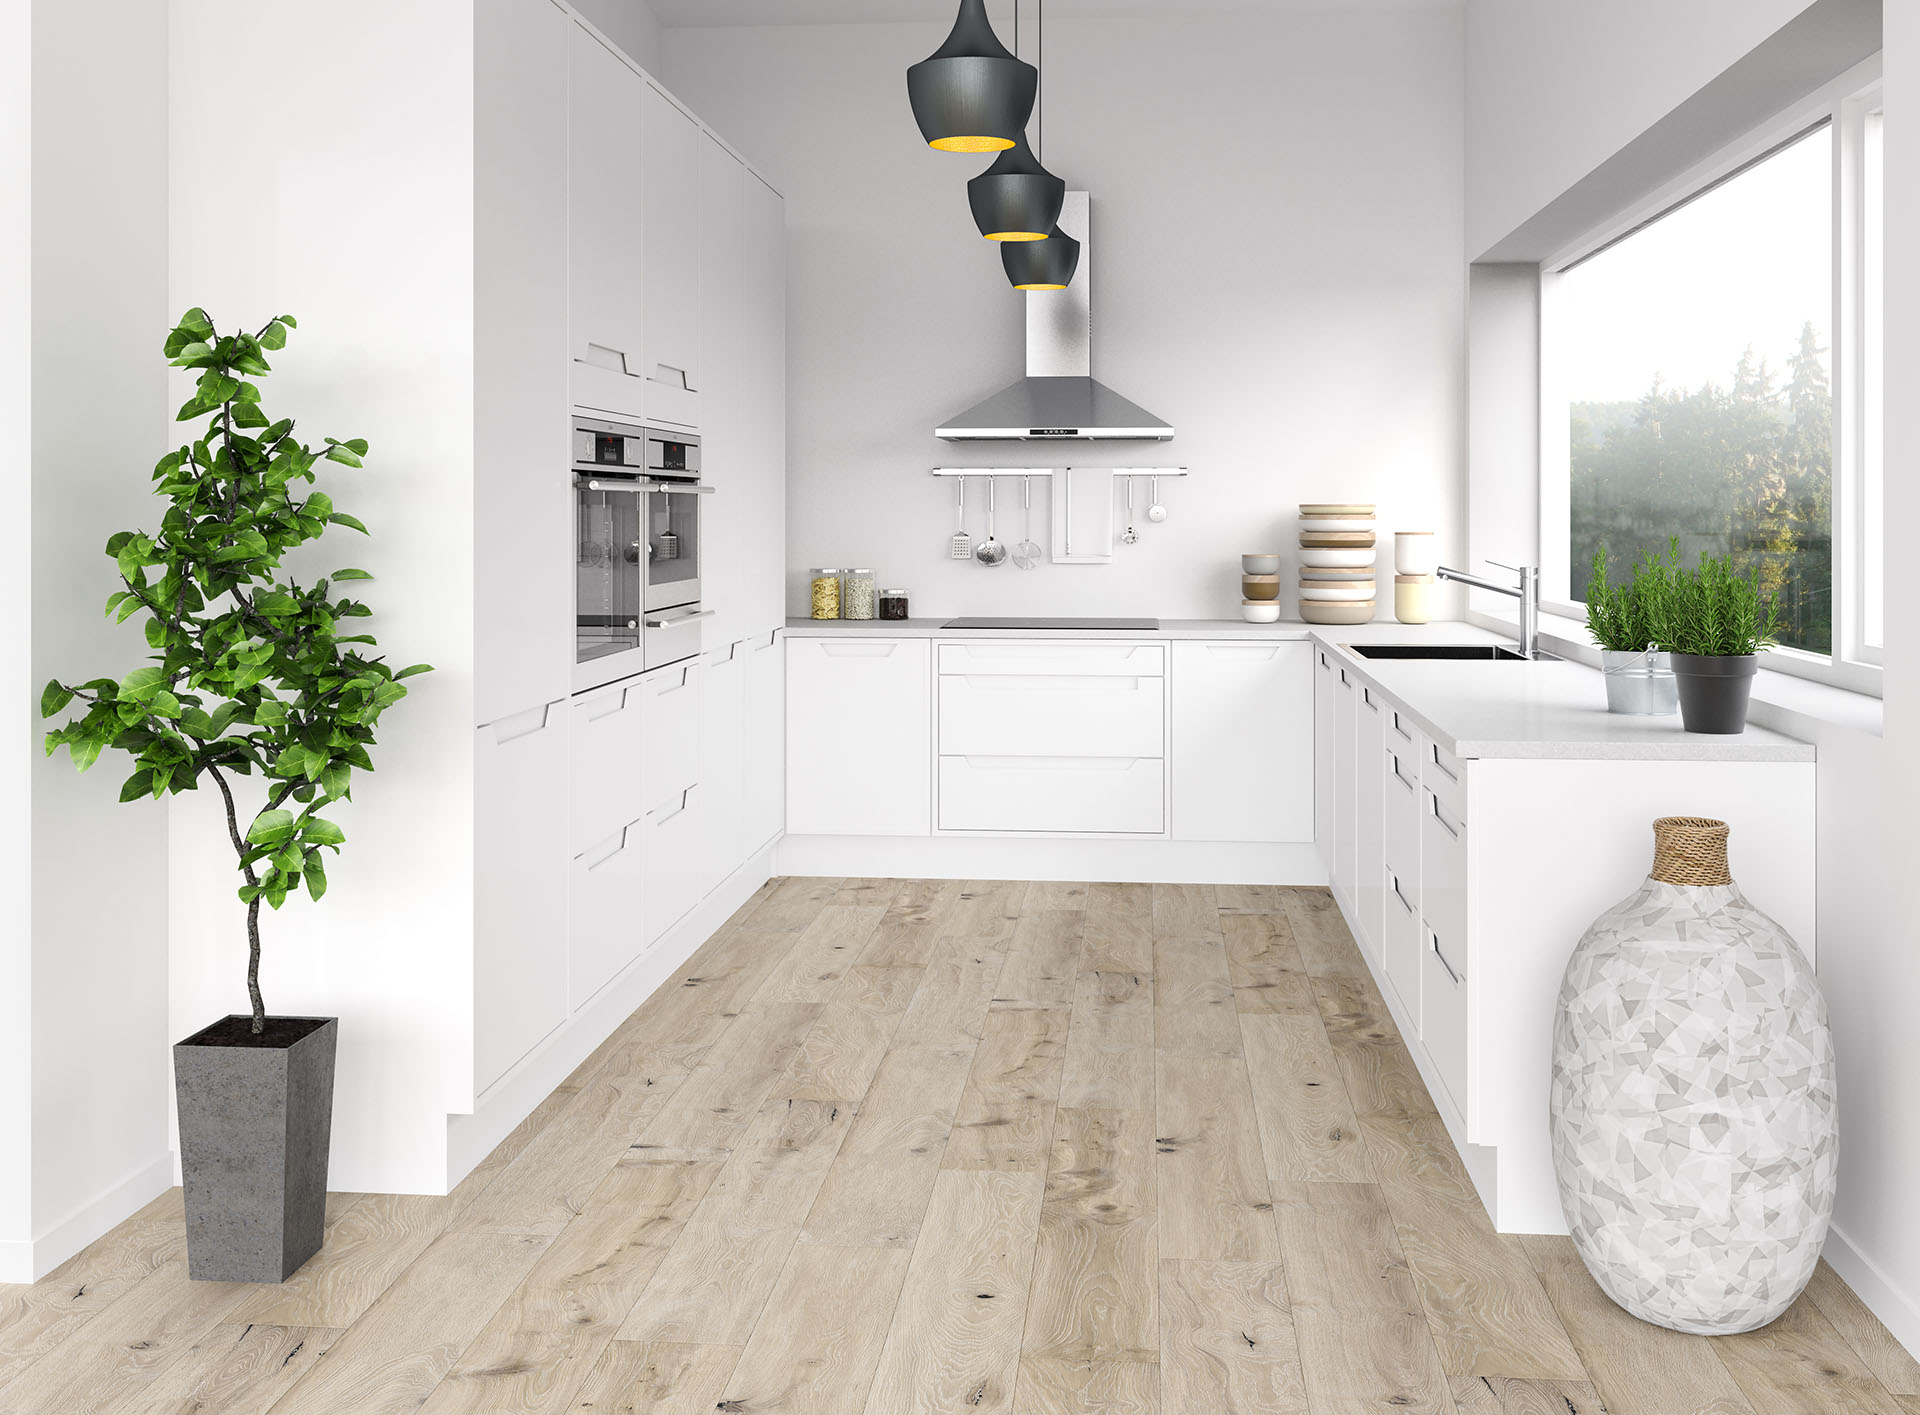 Helle, moderne Küche mit grau-beige farbenem Boden 